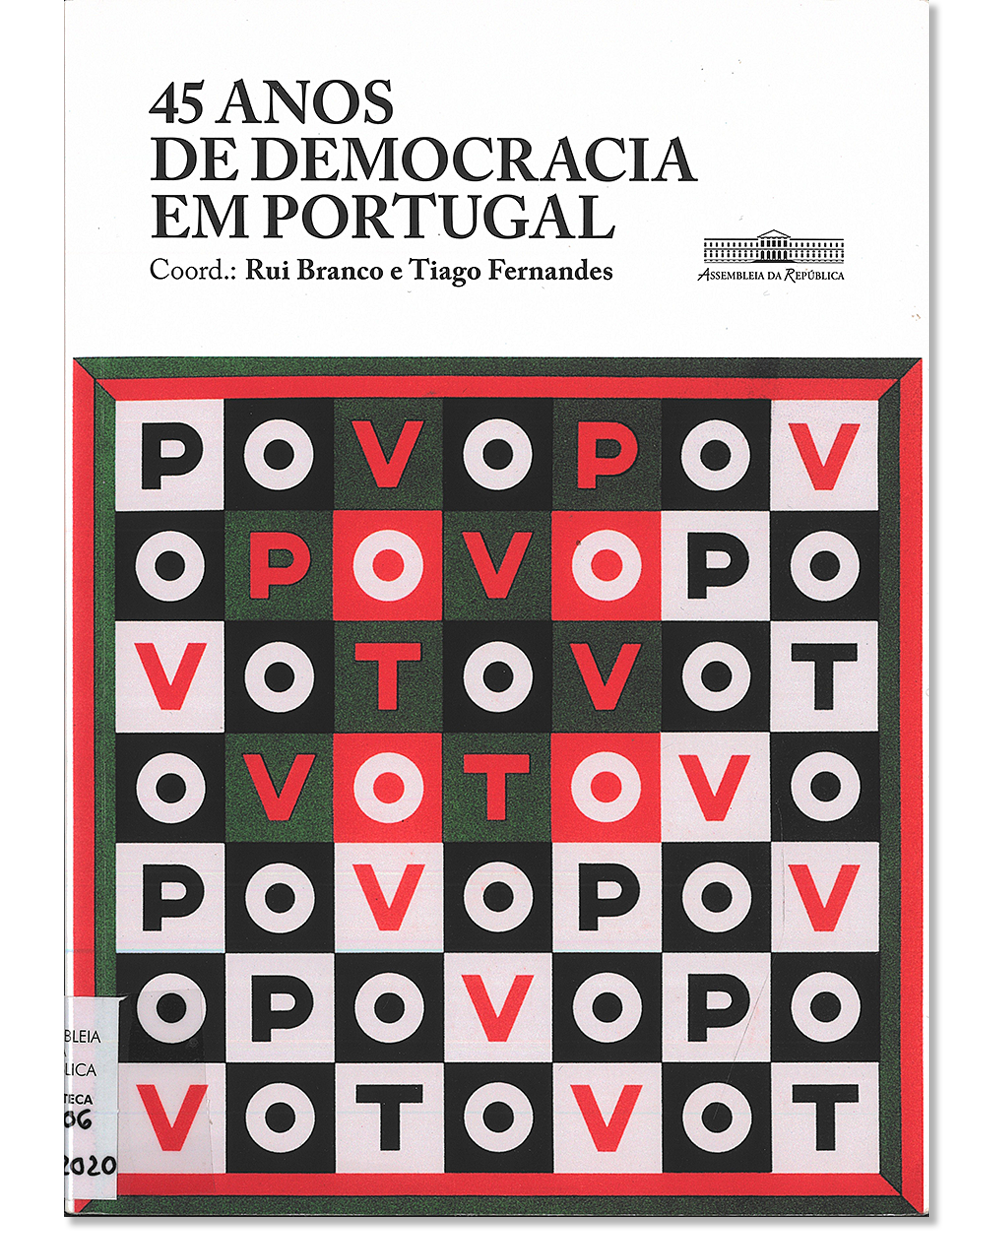 45 anos de democracia em Portugal